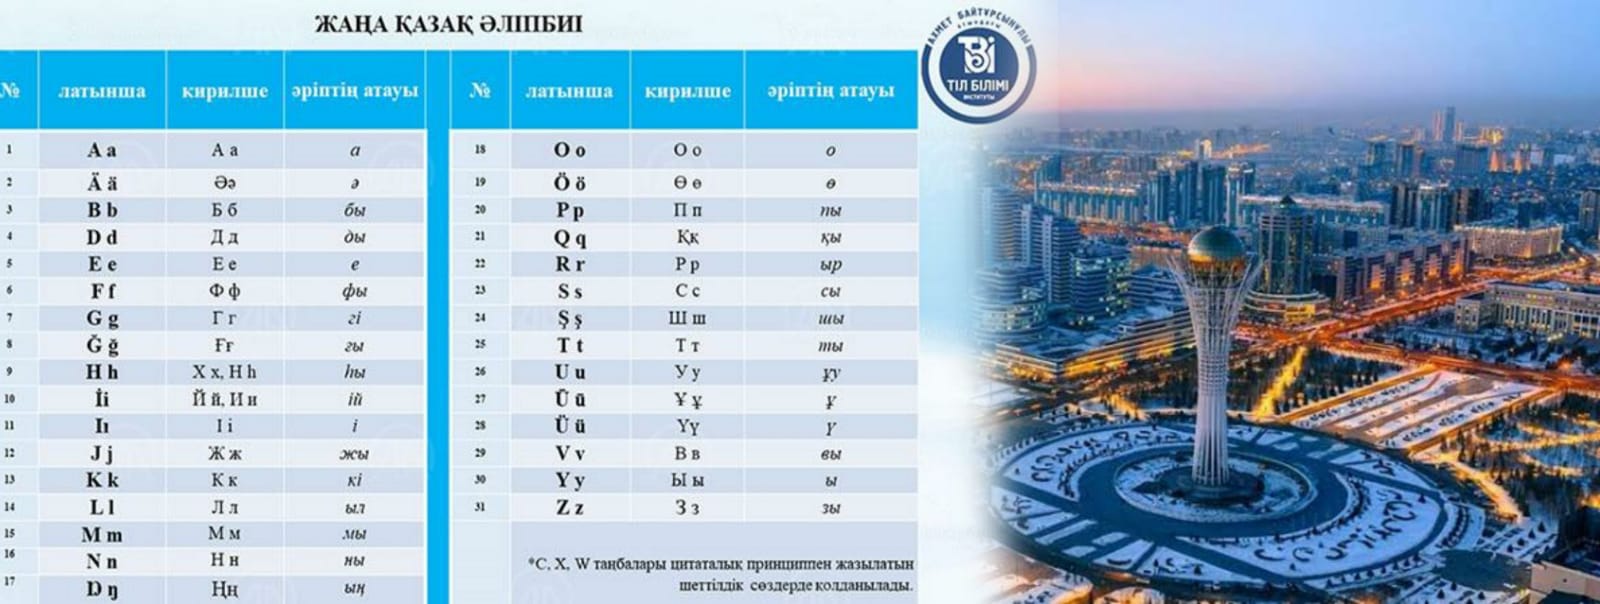 Kazakistan Kiril alfabesinden Latin alfabesine geçiyor